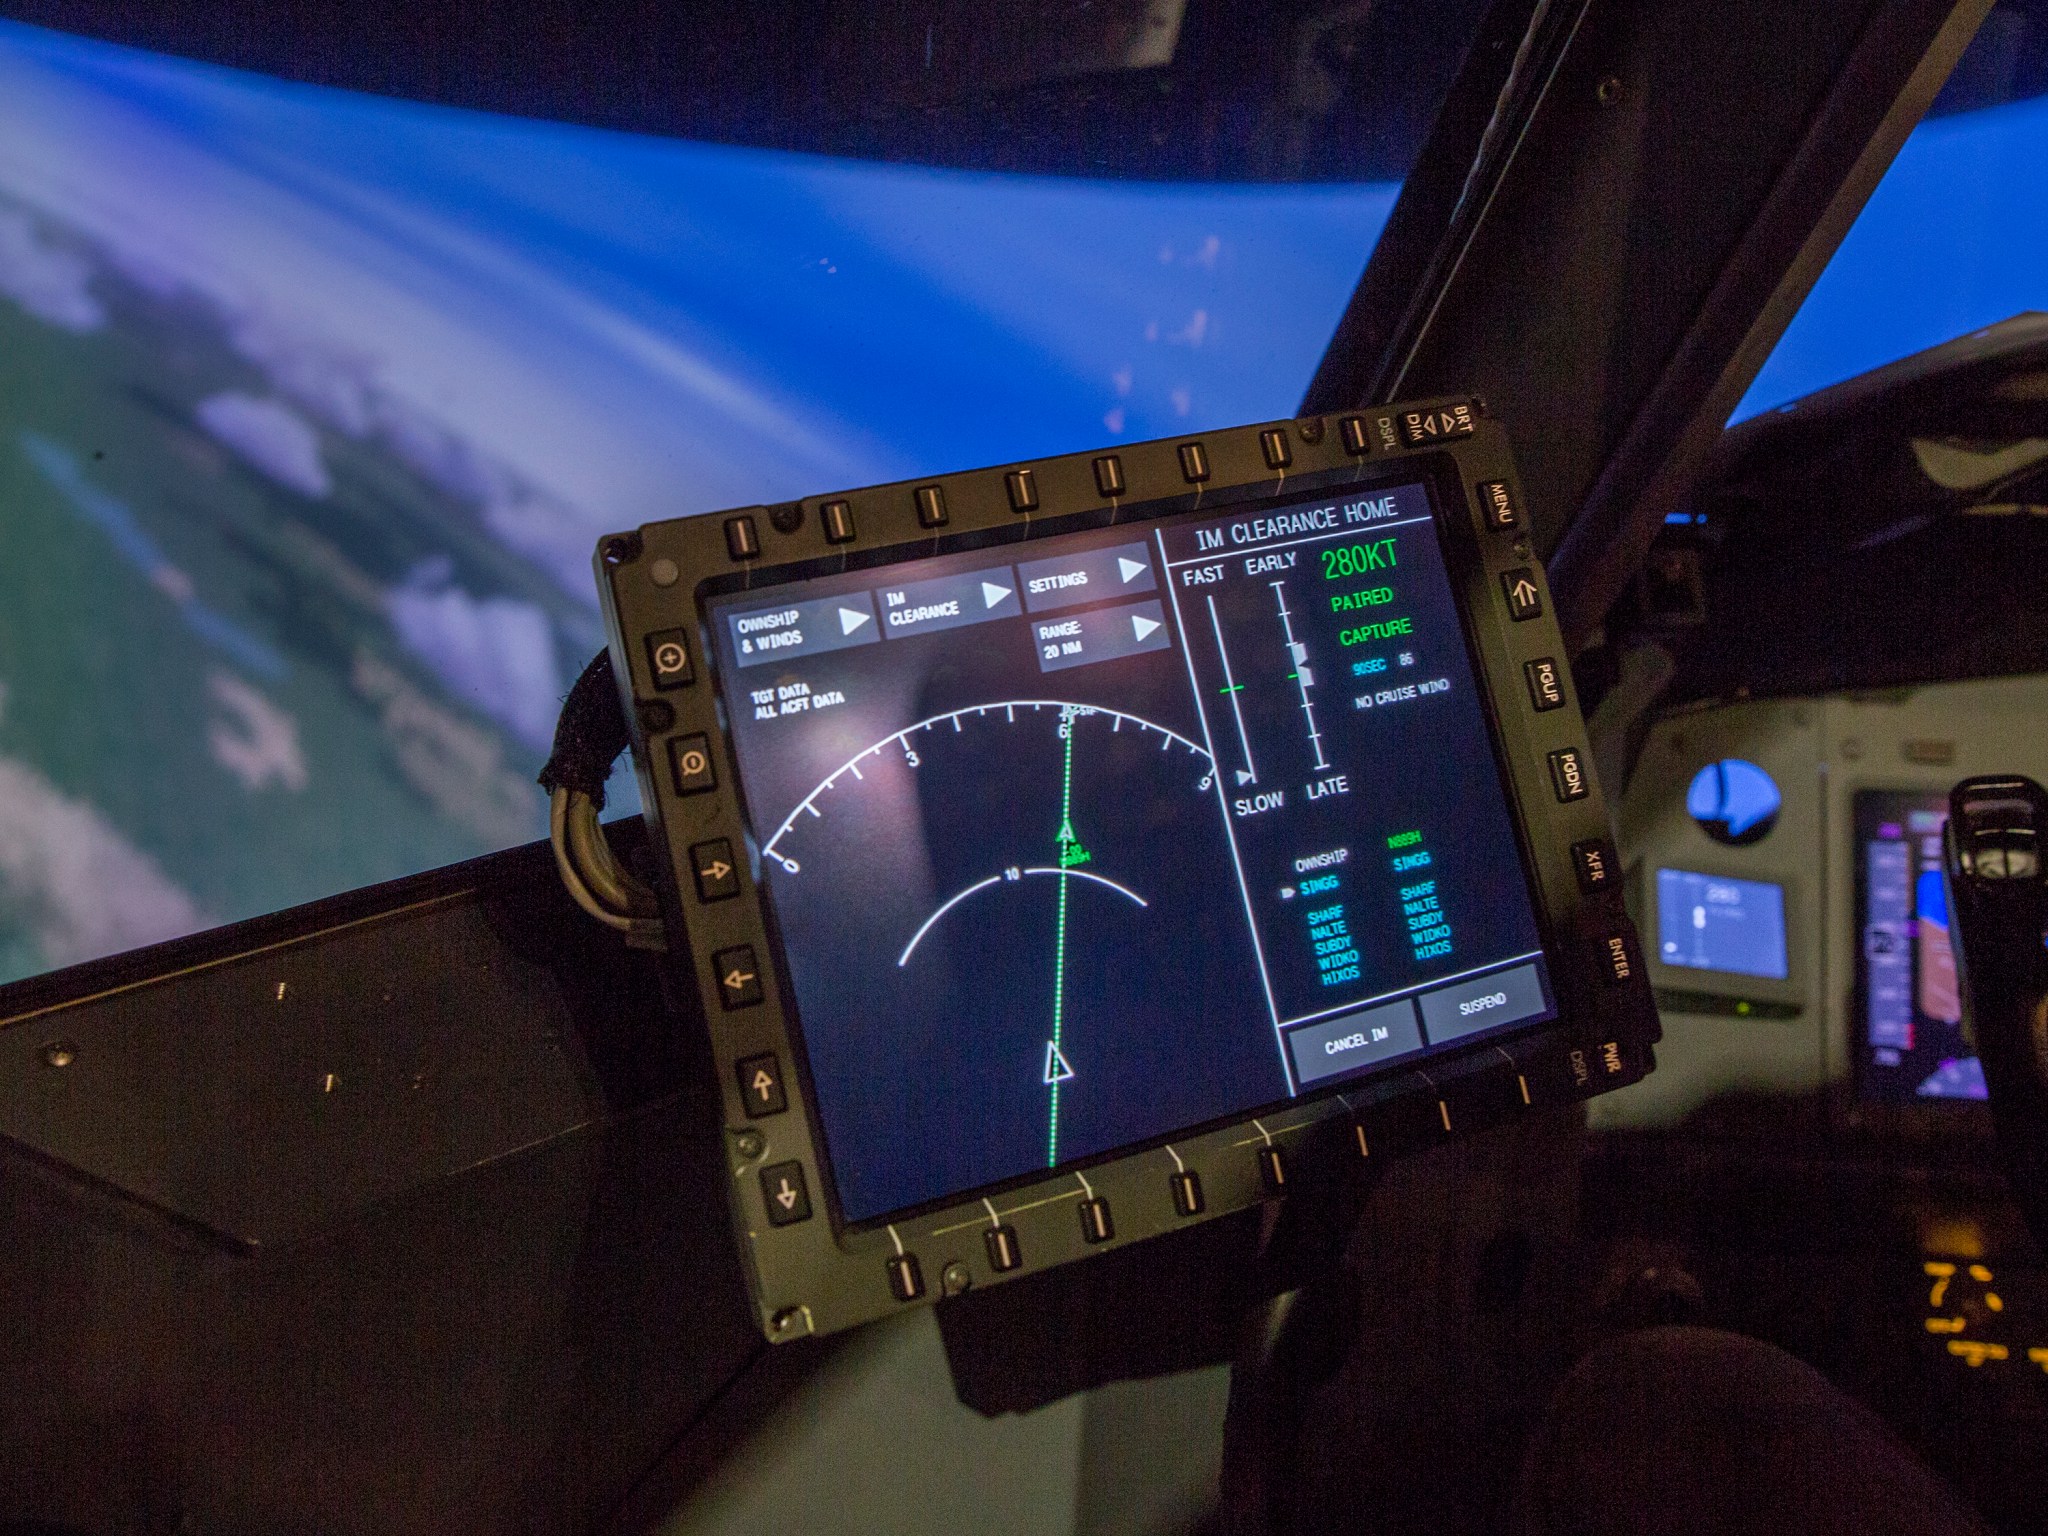 Display inside a cockpit.